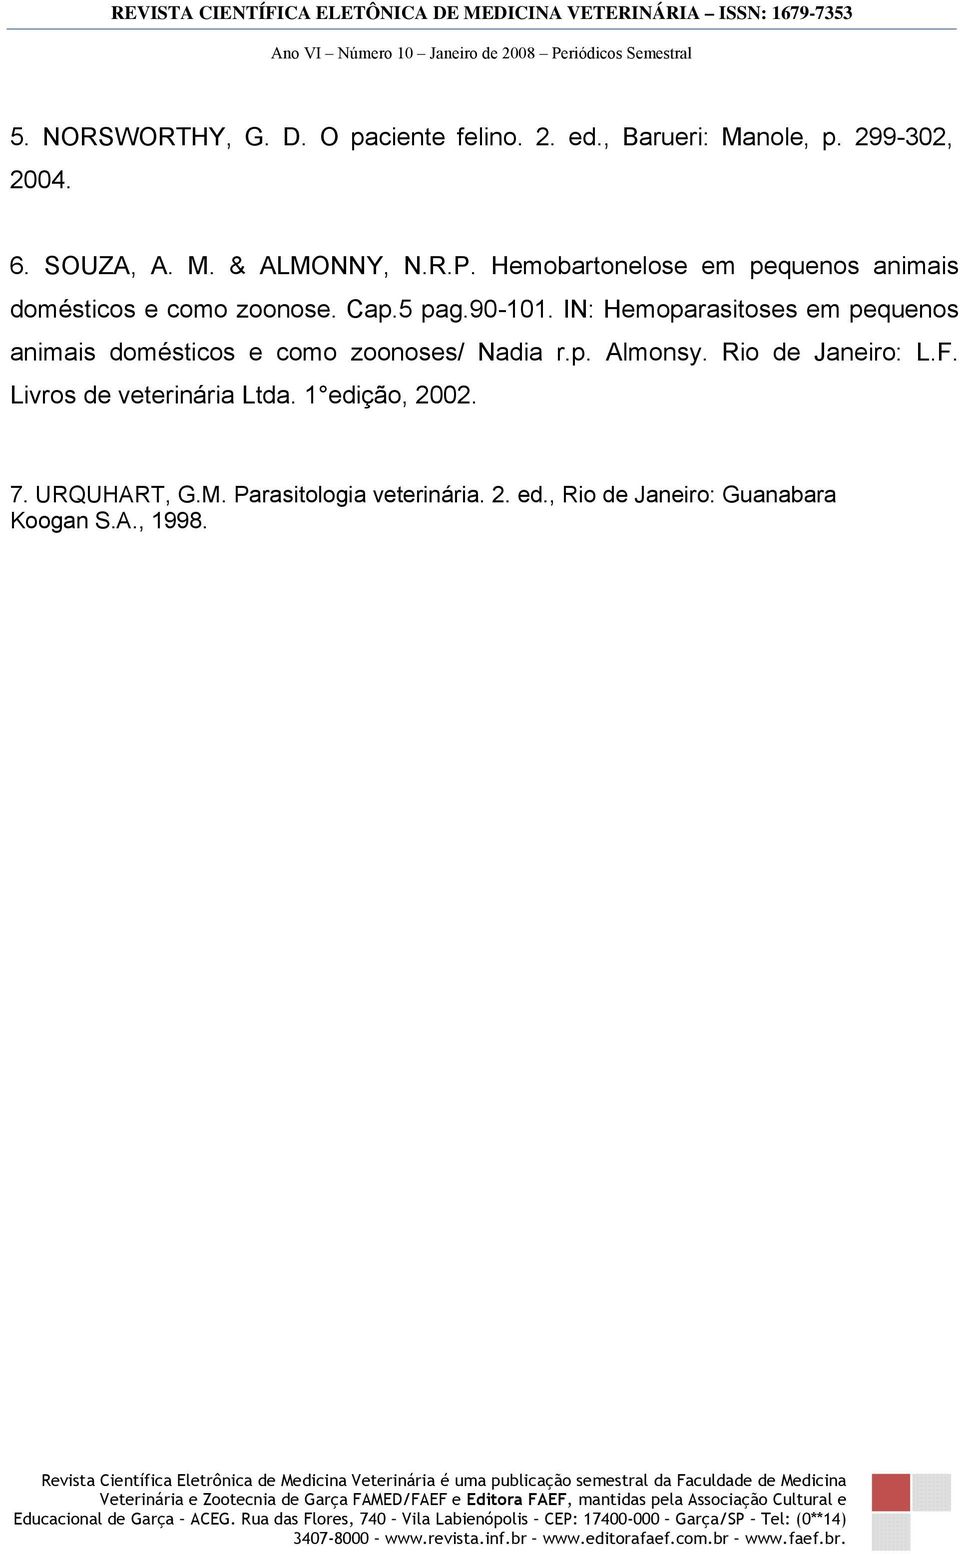 IN: Hemoparasitoses em pequenos animais domésticos e como zoonoses/ Nadia r.p. Almonsy. Rio de Janeiro: L.F.